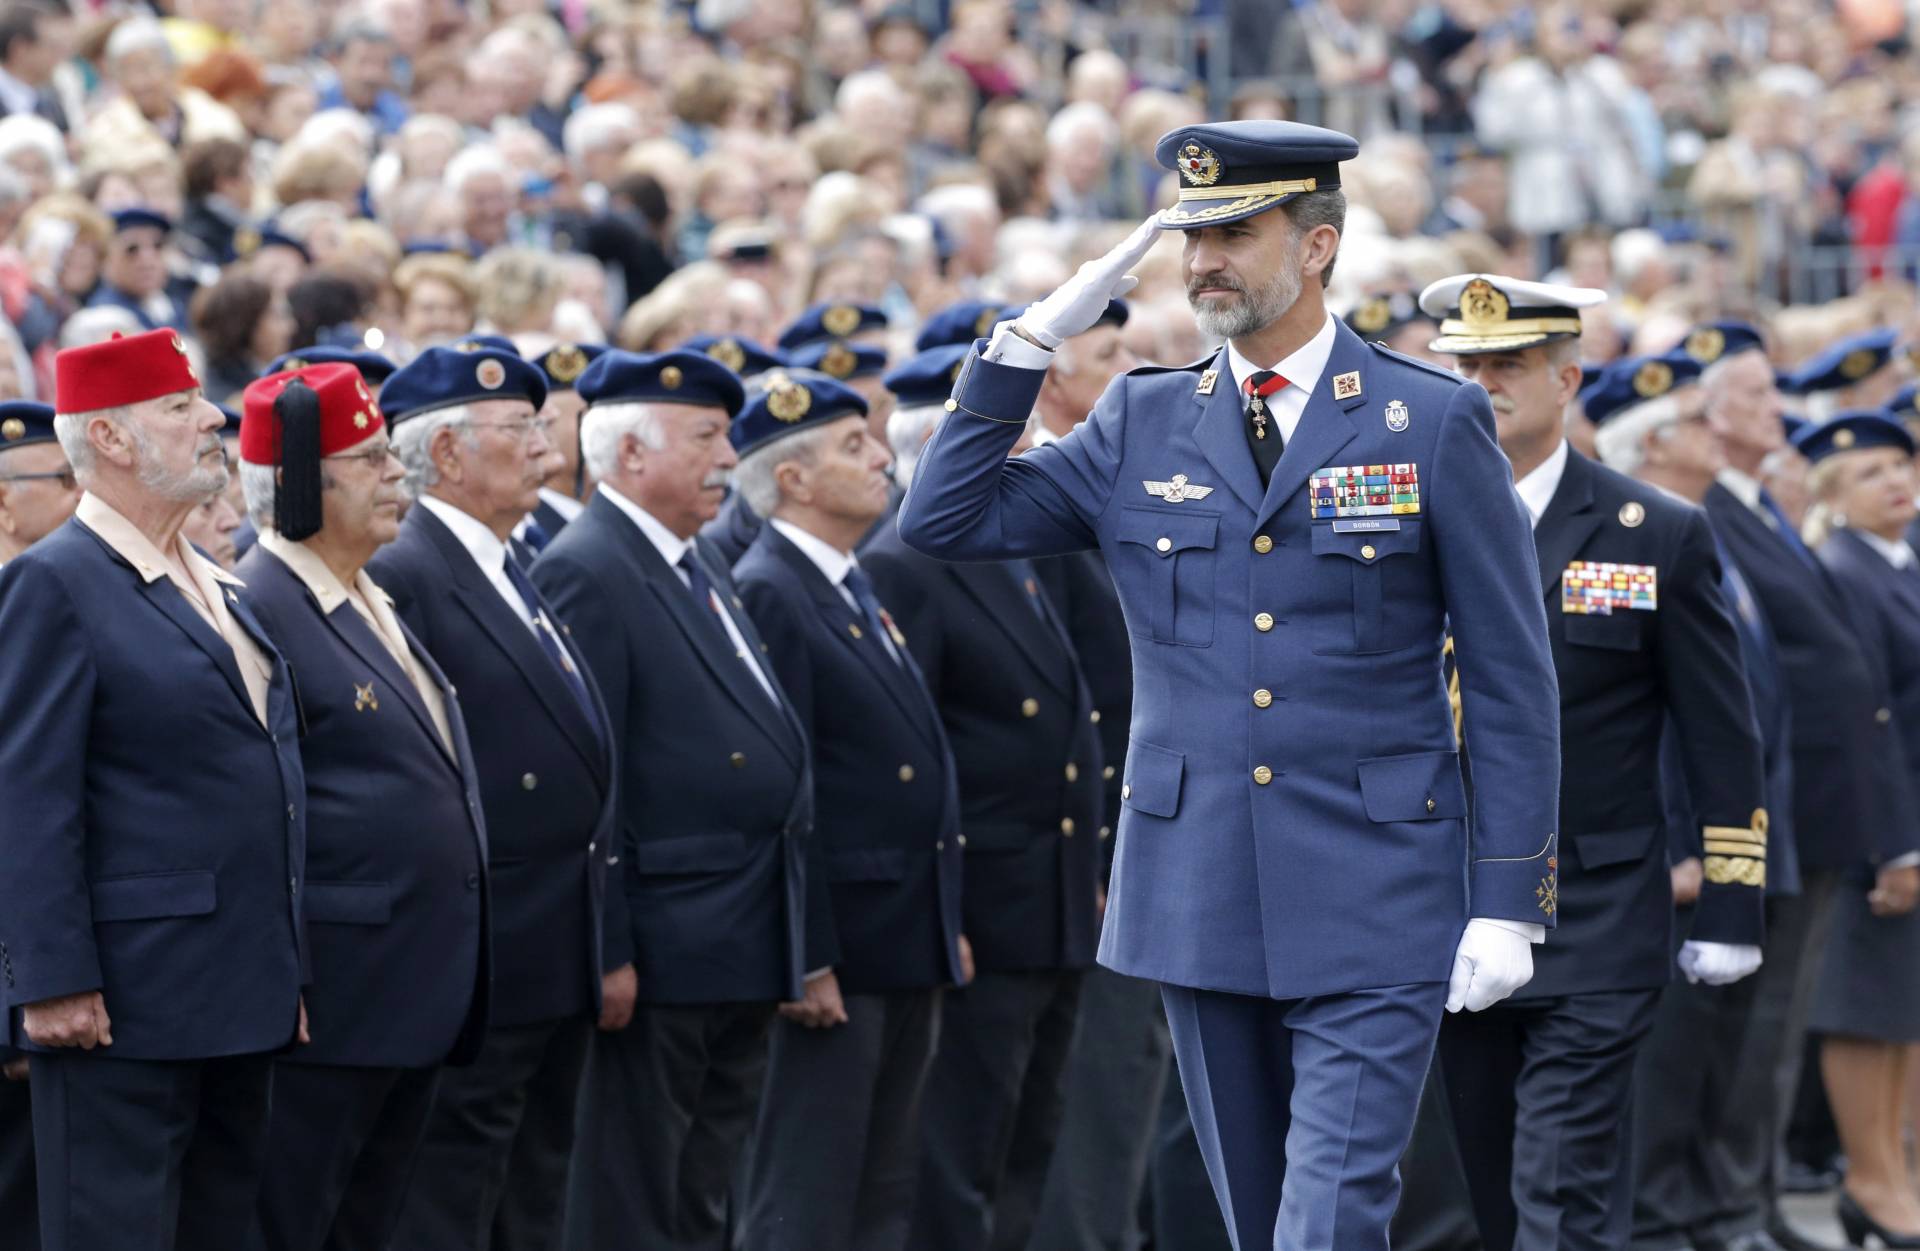 El rey Felipe VI, en el Día del Veterano de las Fuerzas Armadas y la Guardia Civil.